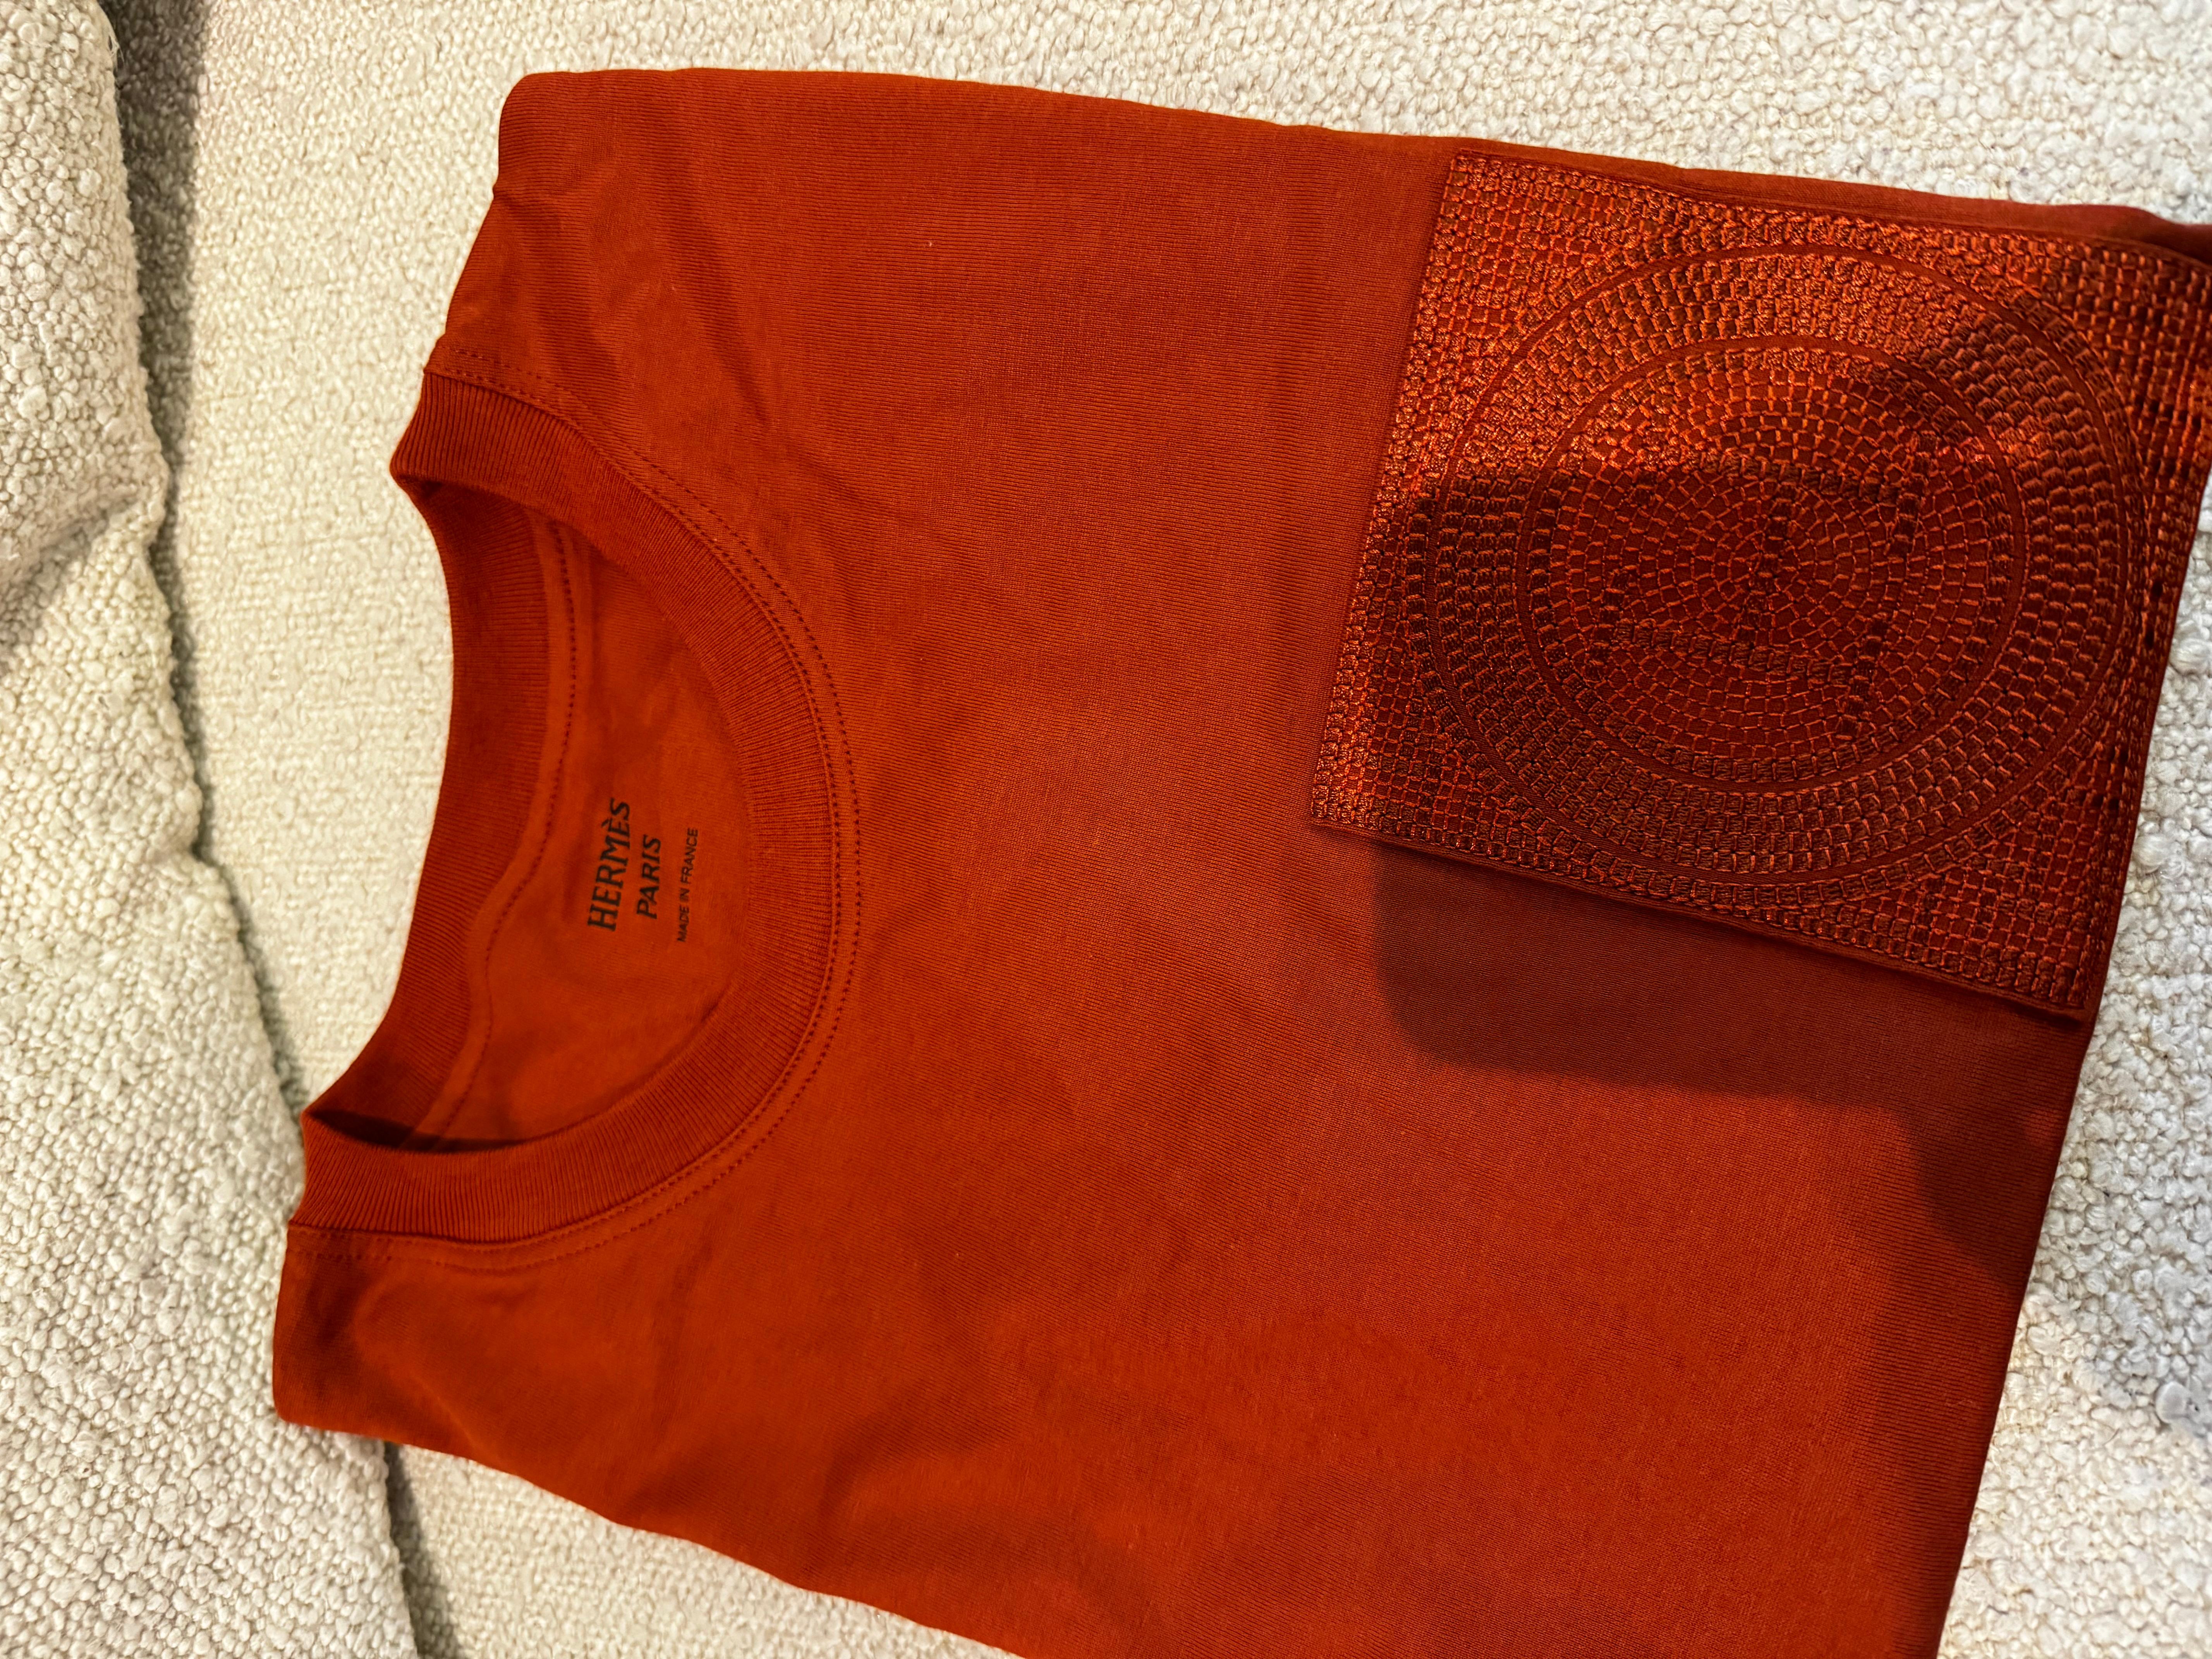 Hermes T-Shirt aus einfarbigem Baumwolljersey (100% Baumwolle)

- Rundhalsausschnitt mit Rippenbündchen
- Vordertasche mit 